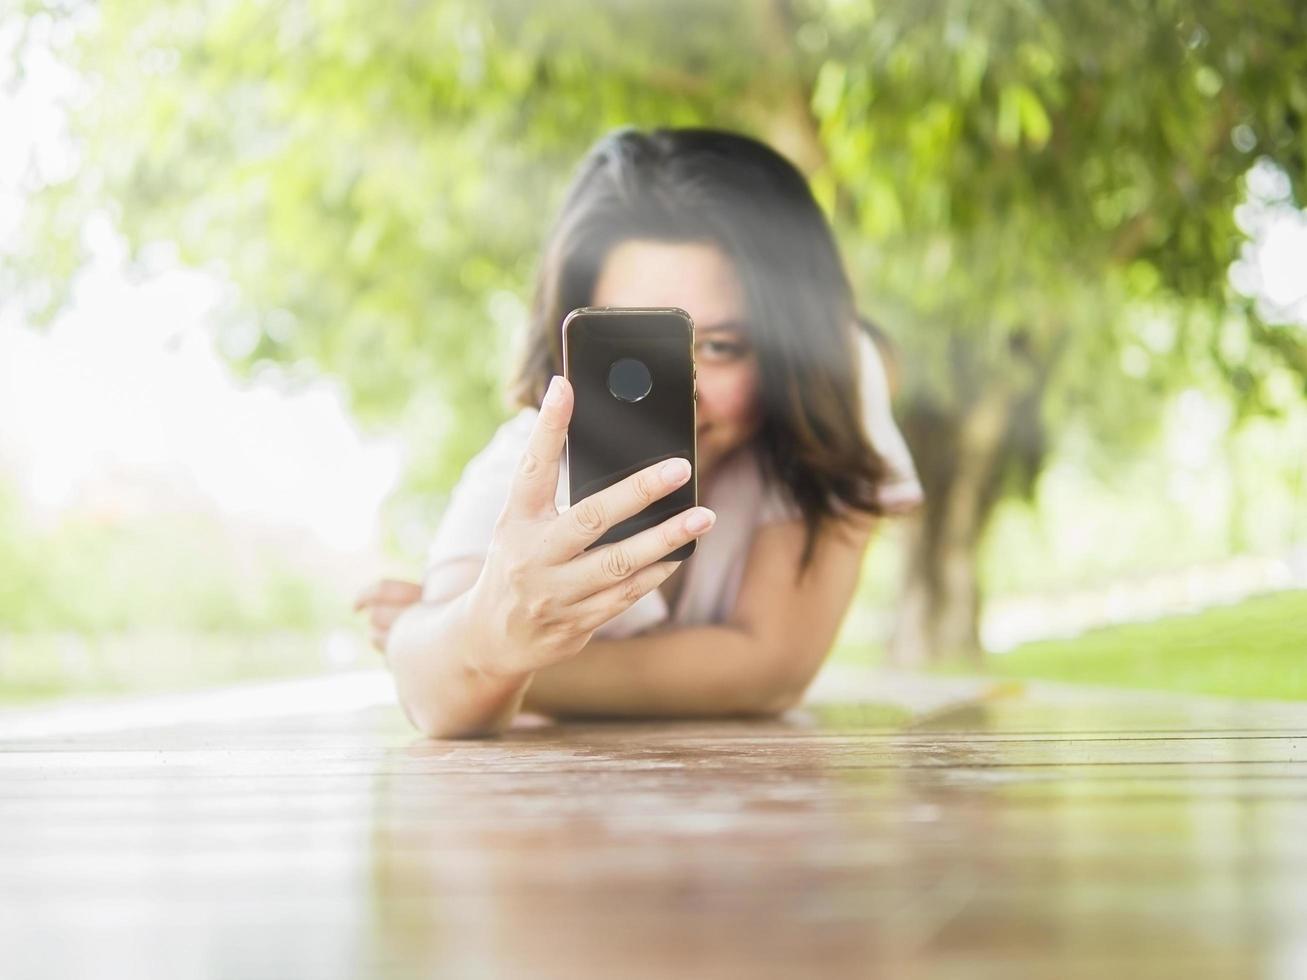 femme allongée sur une terrasse en bois prenant une photo à l'aide d'un téléphone portable dans le parc verdoyant